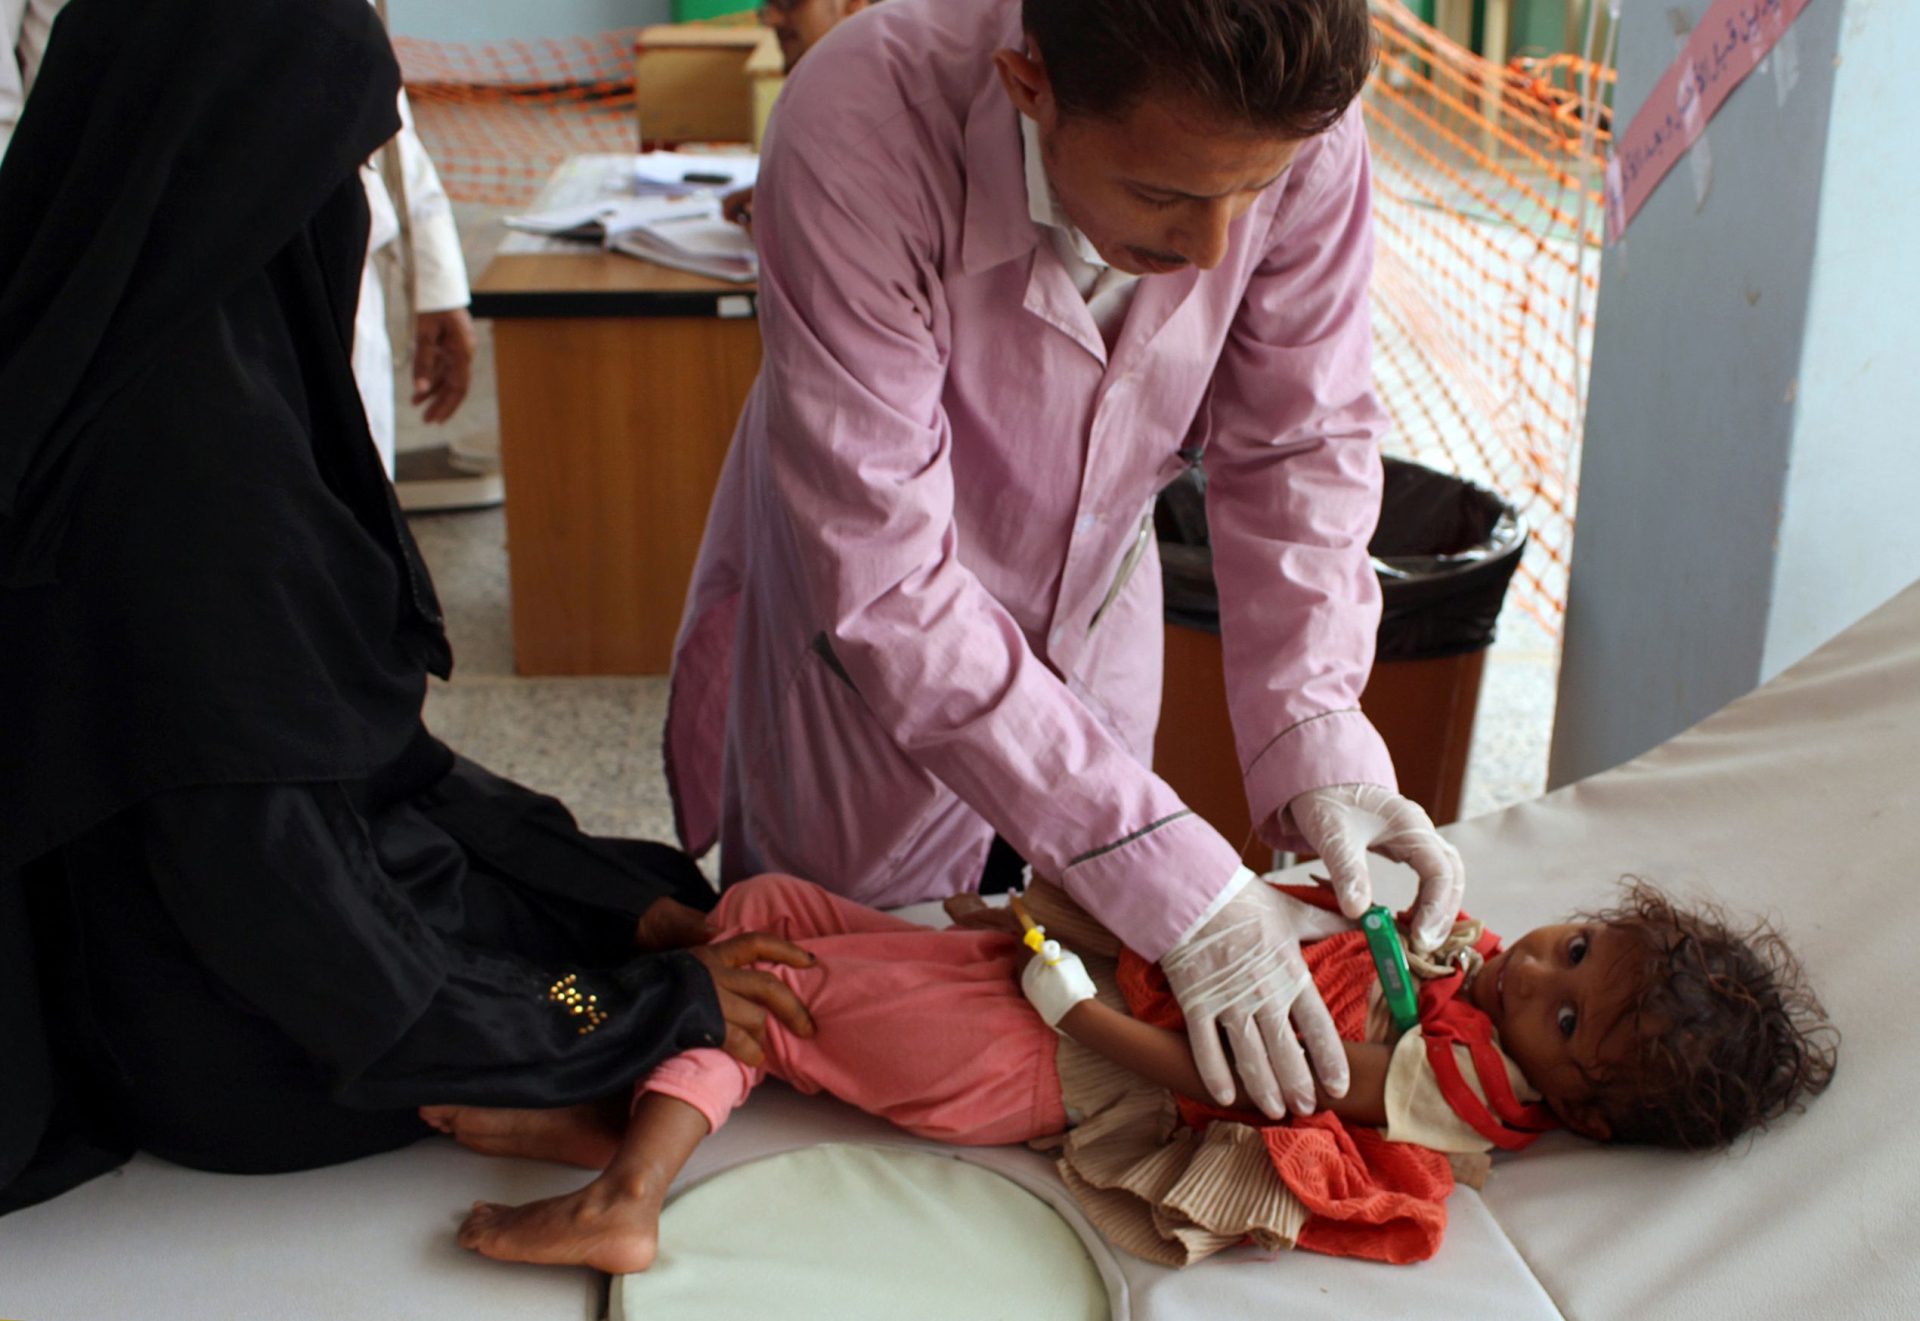 Iémen pode ter 600 mil casos de cólera